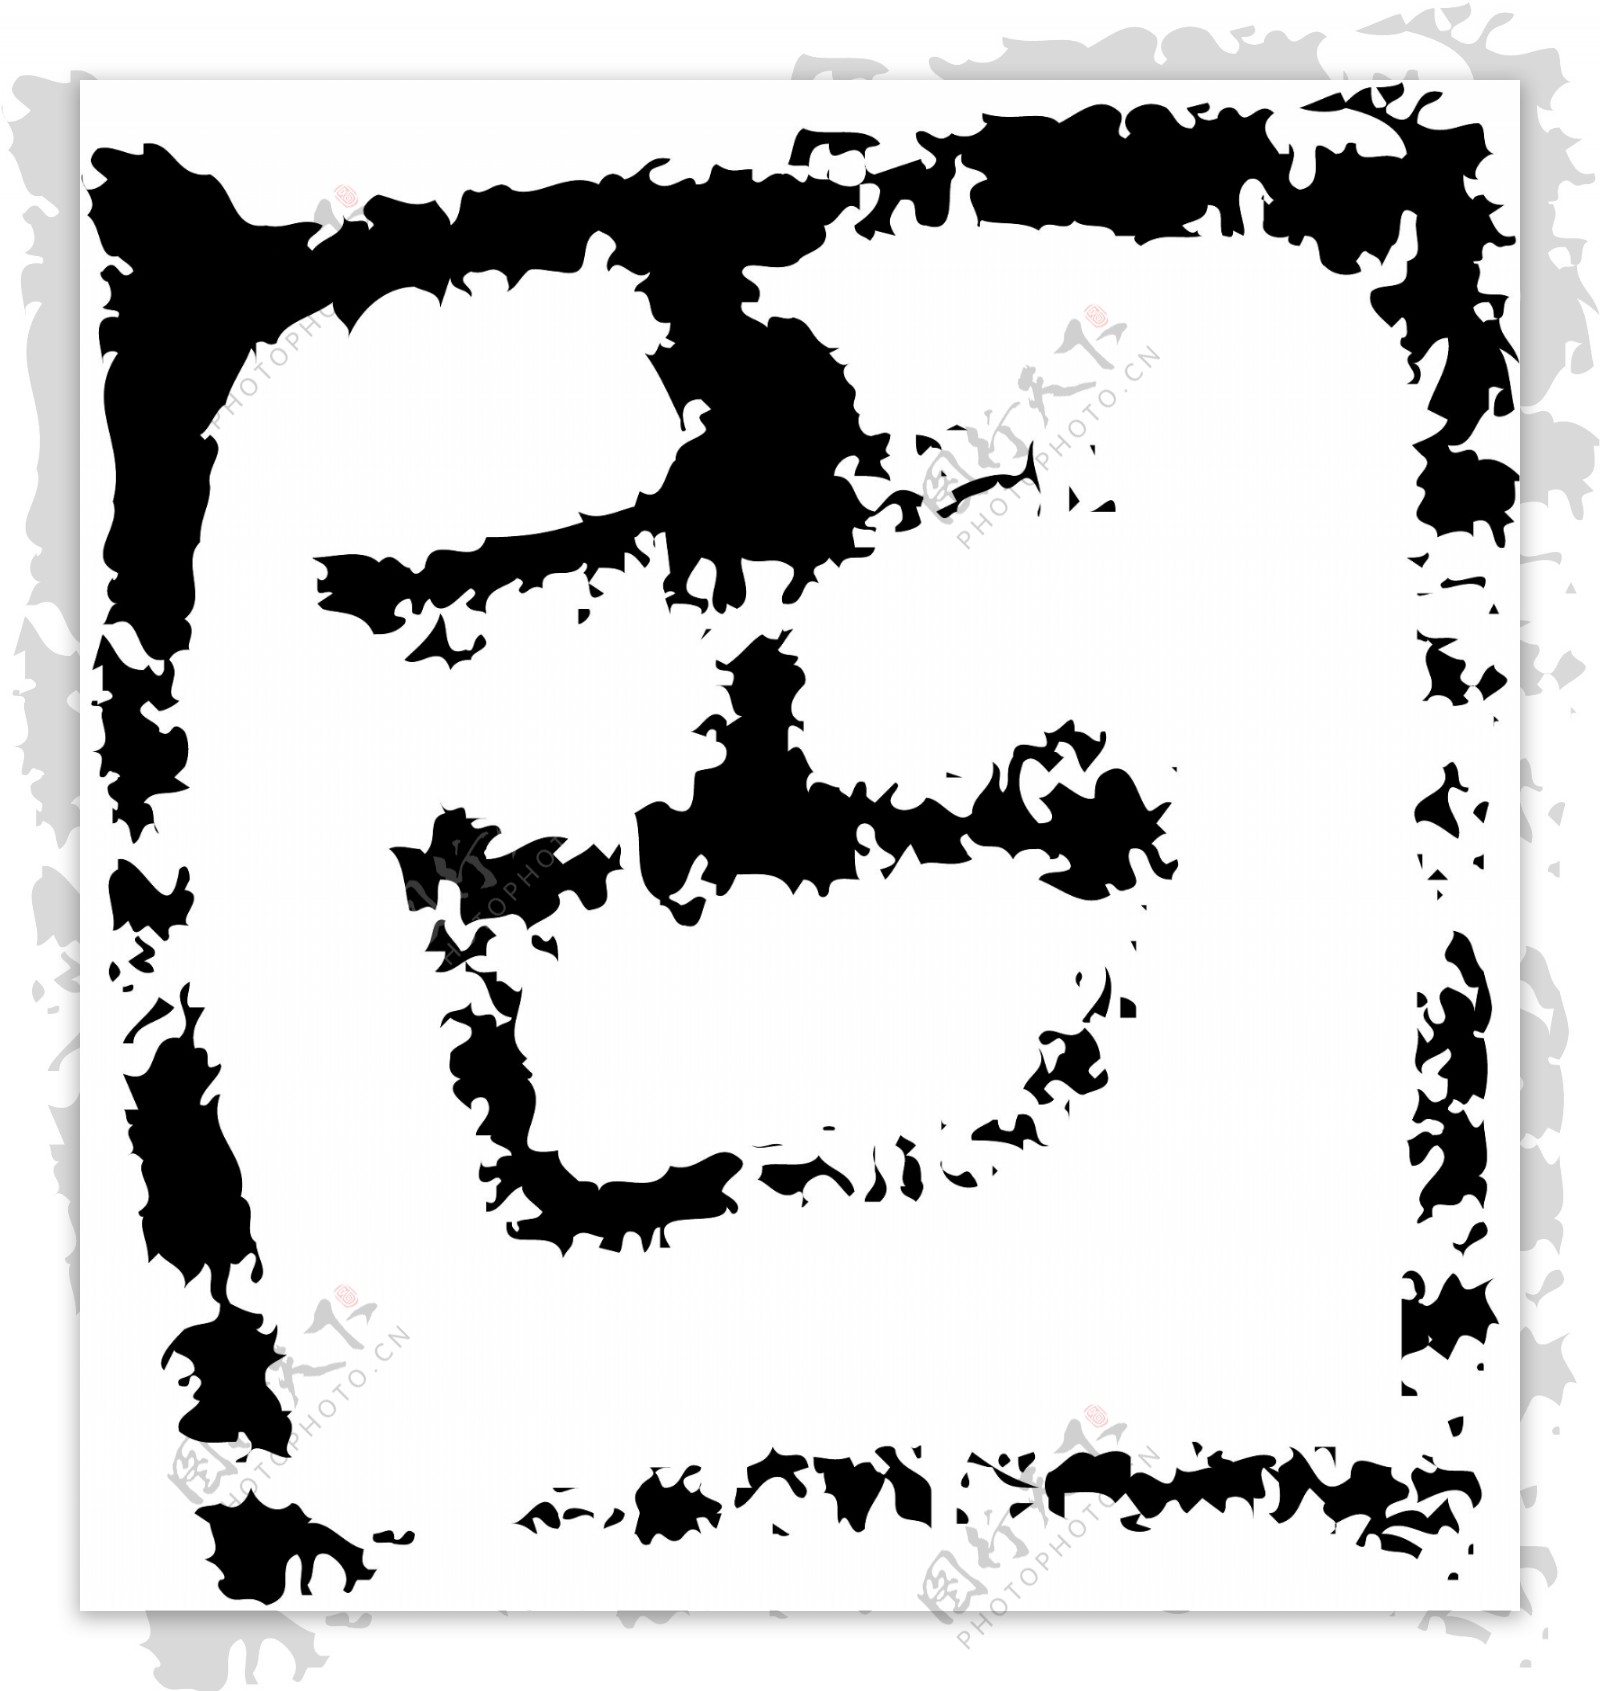 固书法汉字八画传统艺术矢量AI格式1150